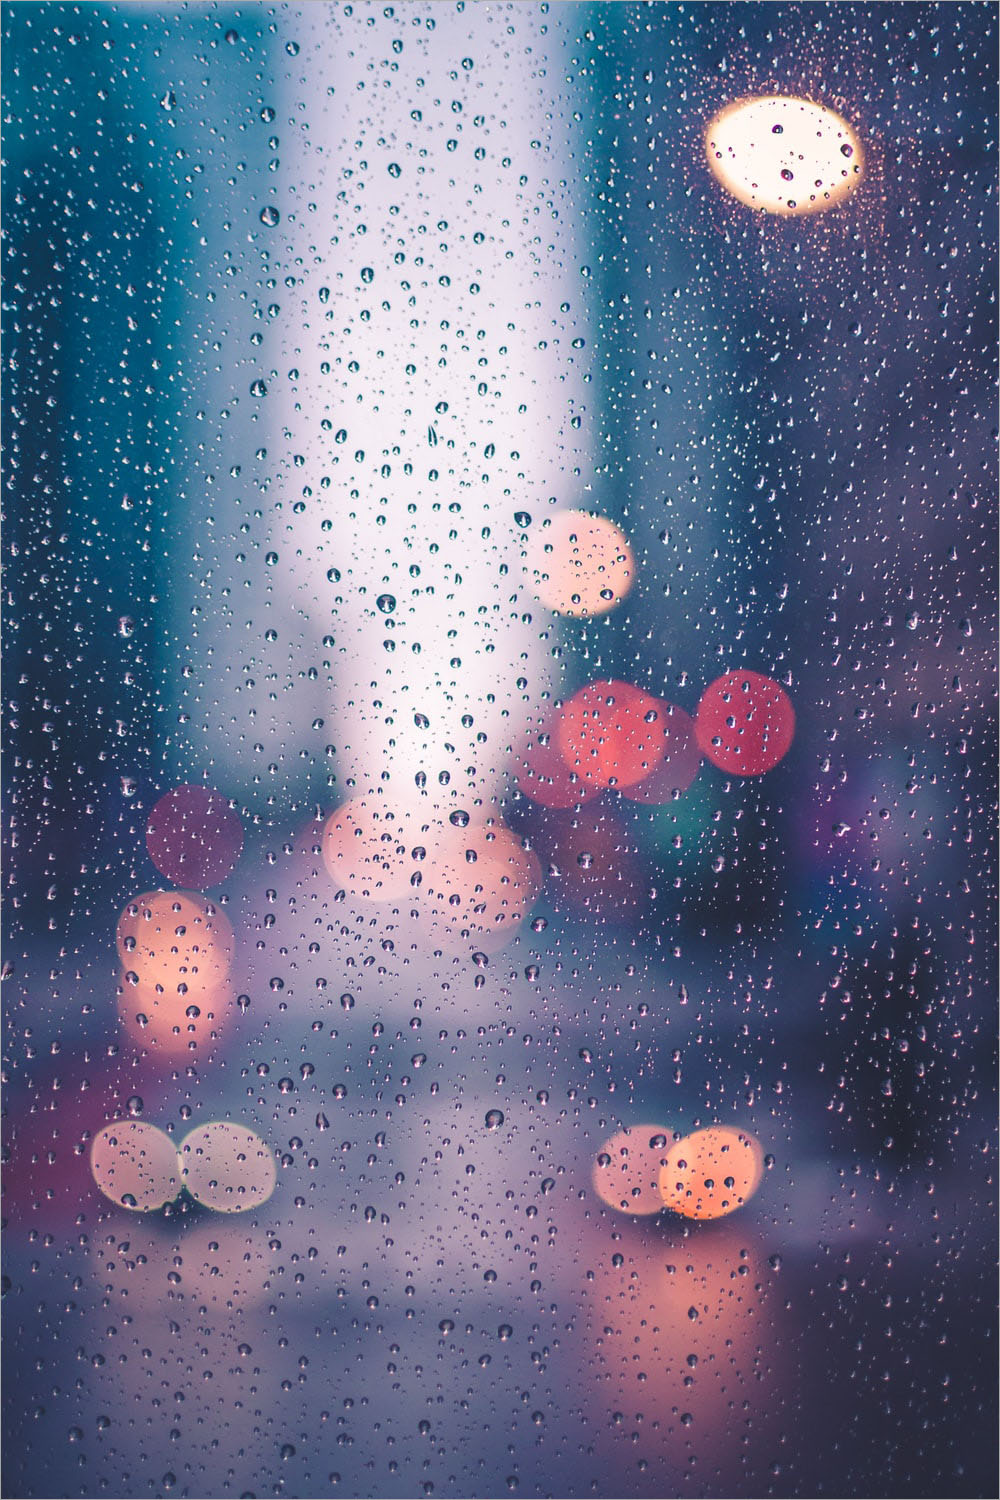 Hình ảnh mưa đẹp, buồn, lãng mạn nhất